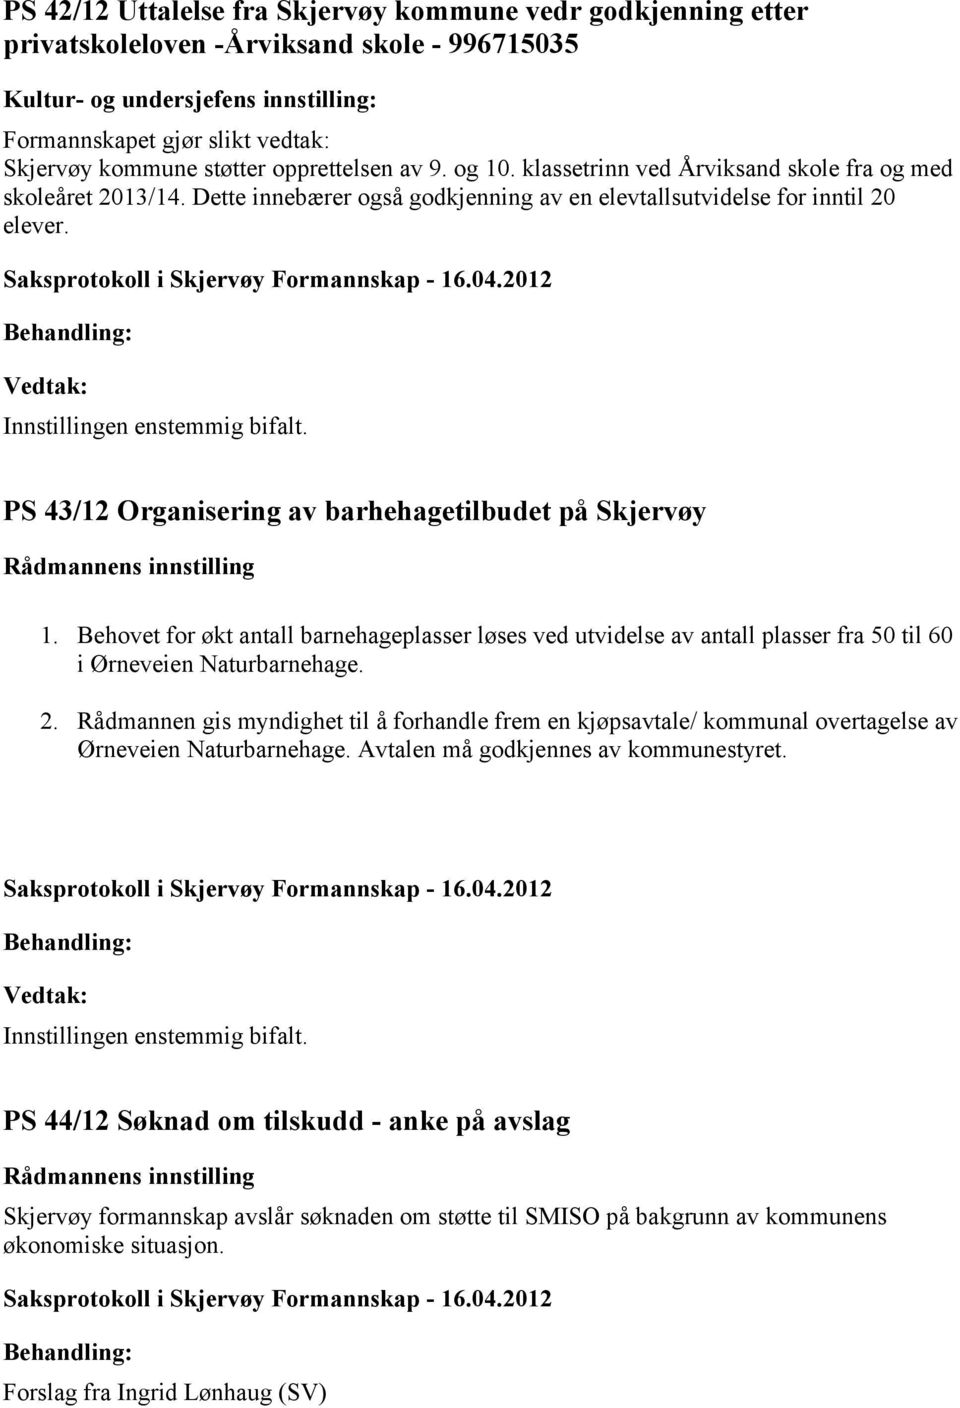 PS 43/12 Organisering av barhehagetilbudet på Skjervøy 1. Behovet for økt antall barnehageplasser løses ved utvidelse av antall plasser fra 50 til 60 i Ørneveien Naturbarnehage. 2.